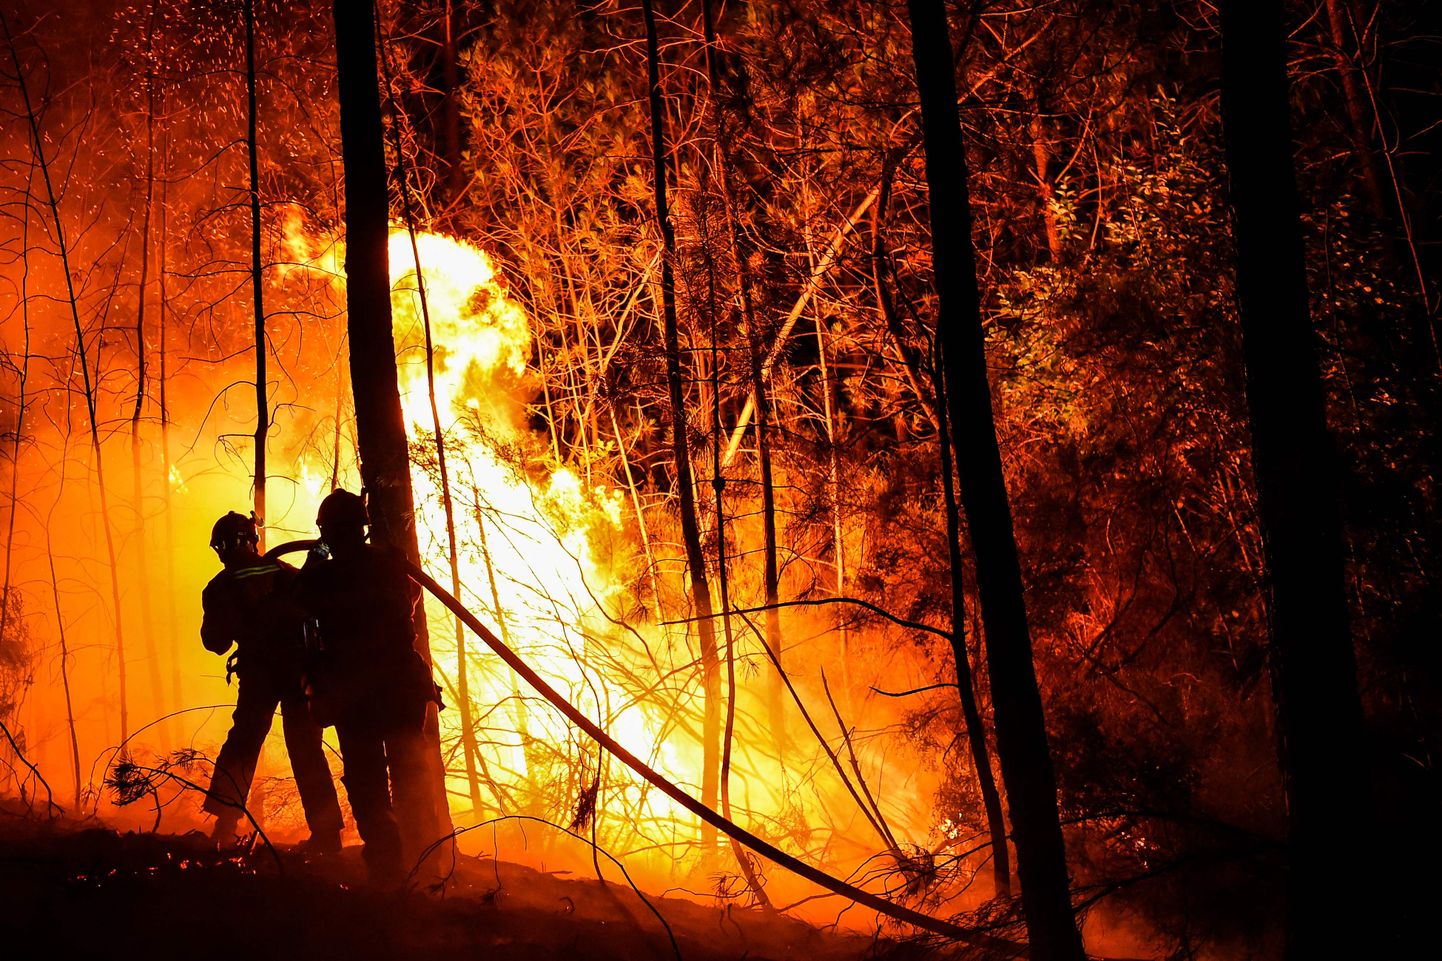 Tuletõrjujad võitlemas Prantsusmaa lõunaosas suure metsapõlenguga.